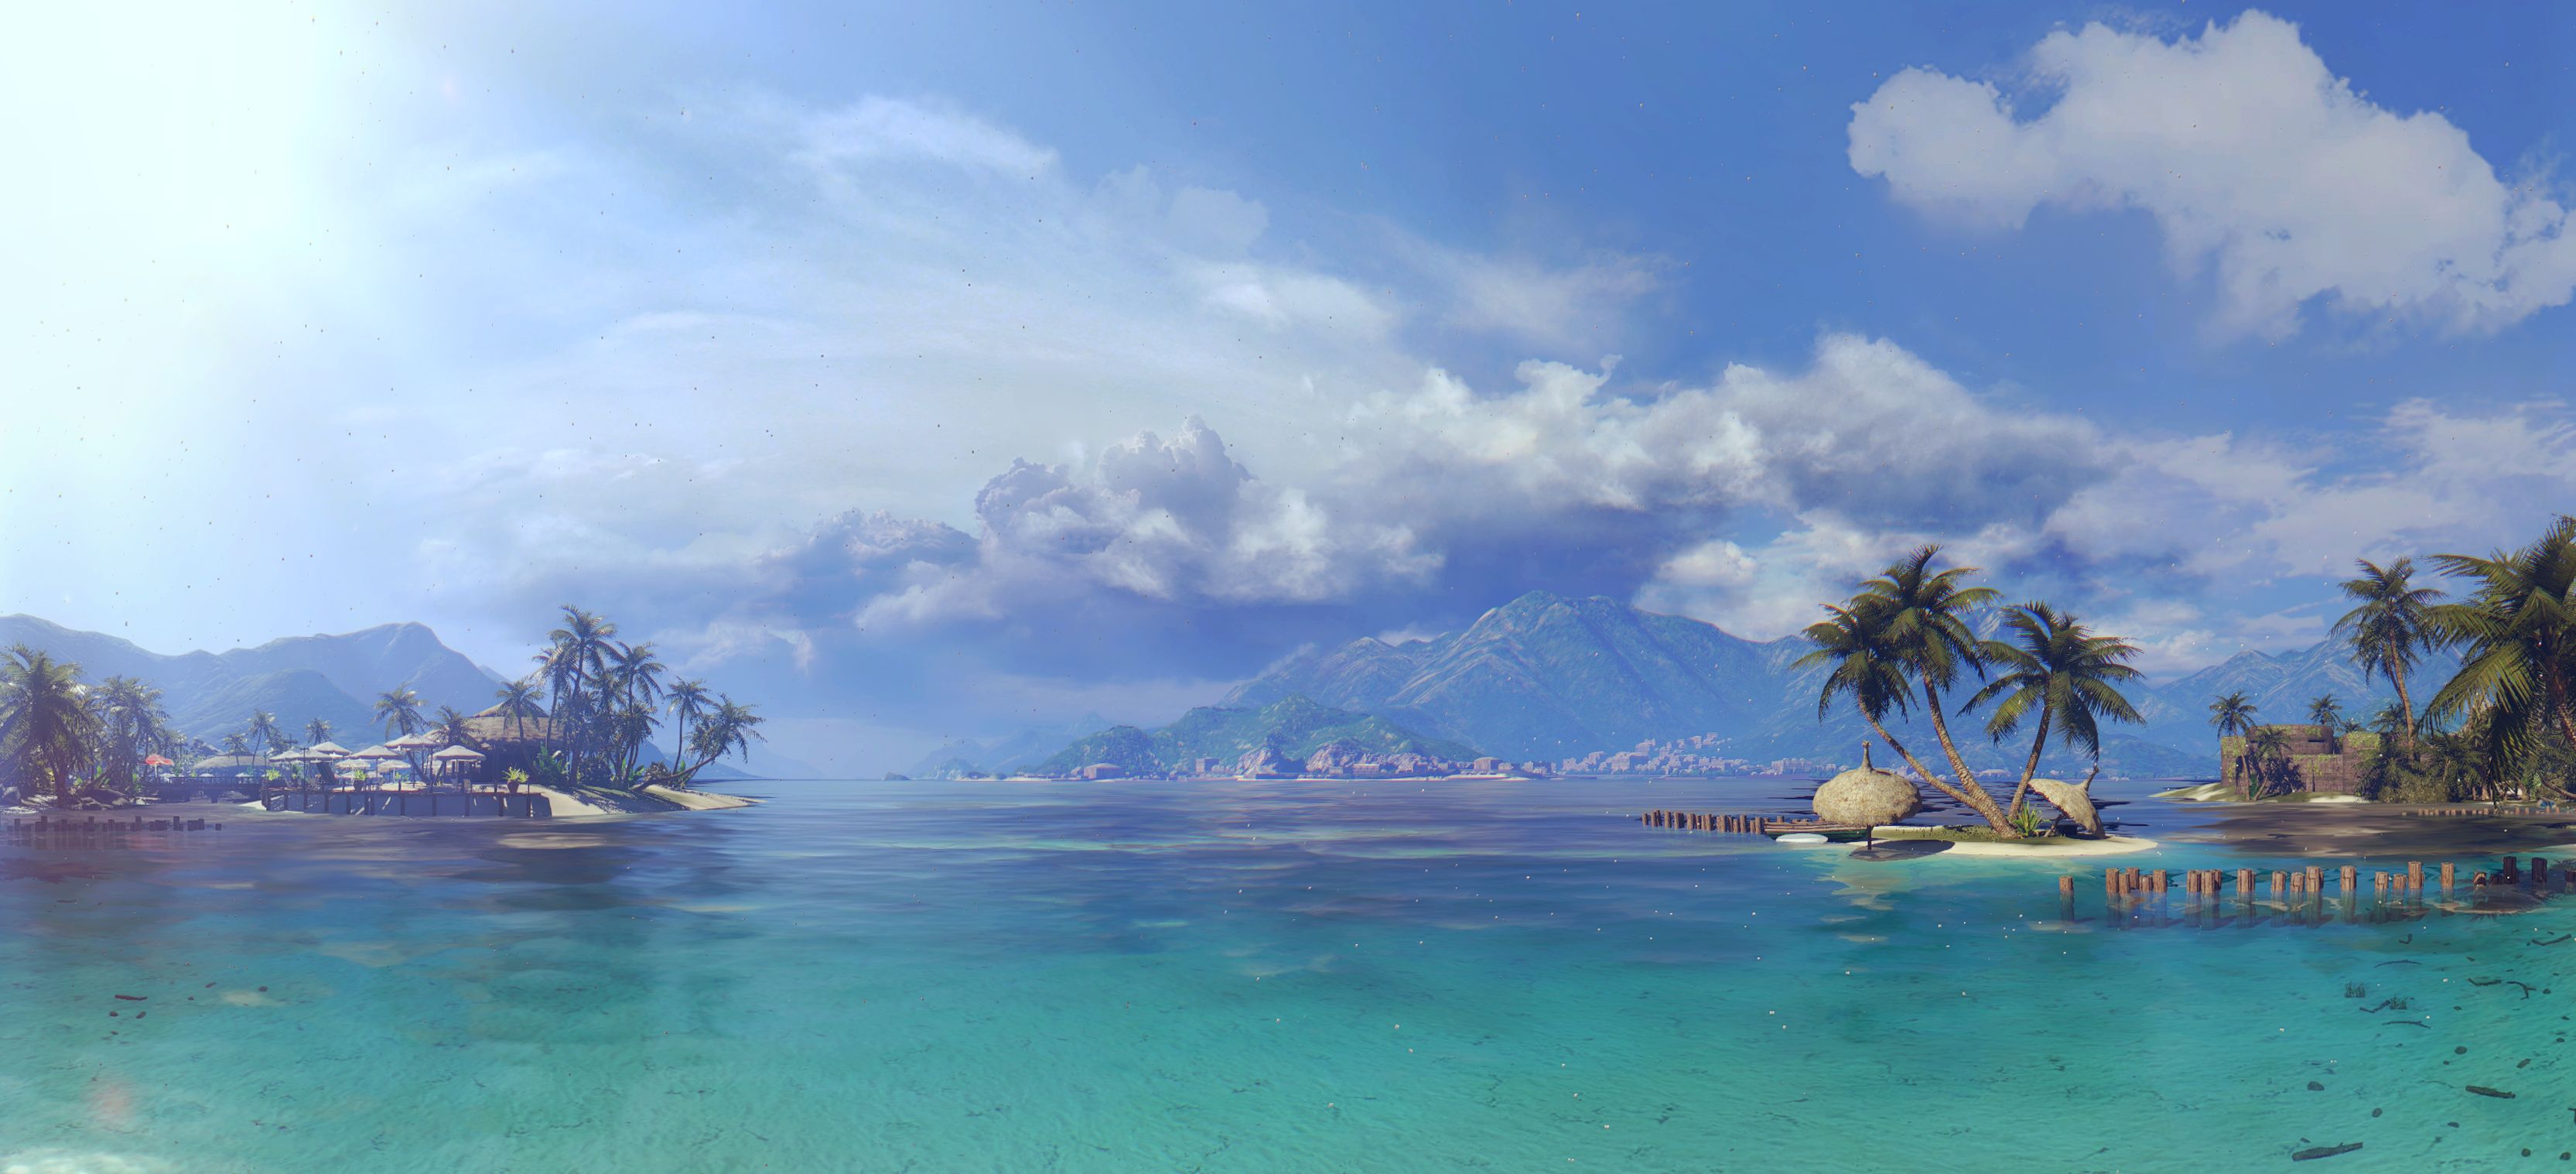 Скачать обои бесплатно Видеоигры, Мертвый Остров картинка на рабочий стол ПК